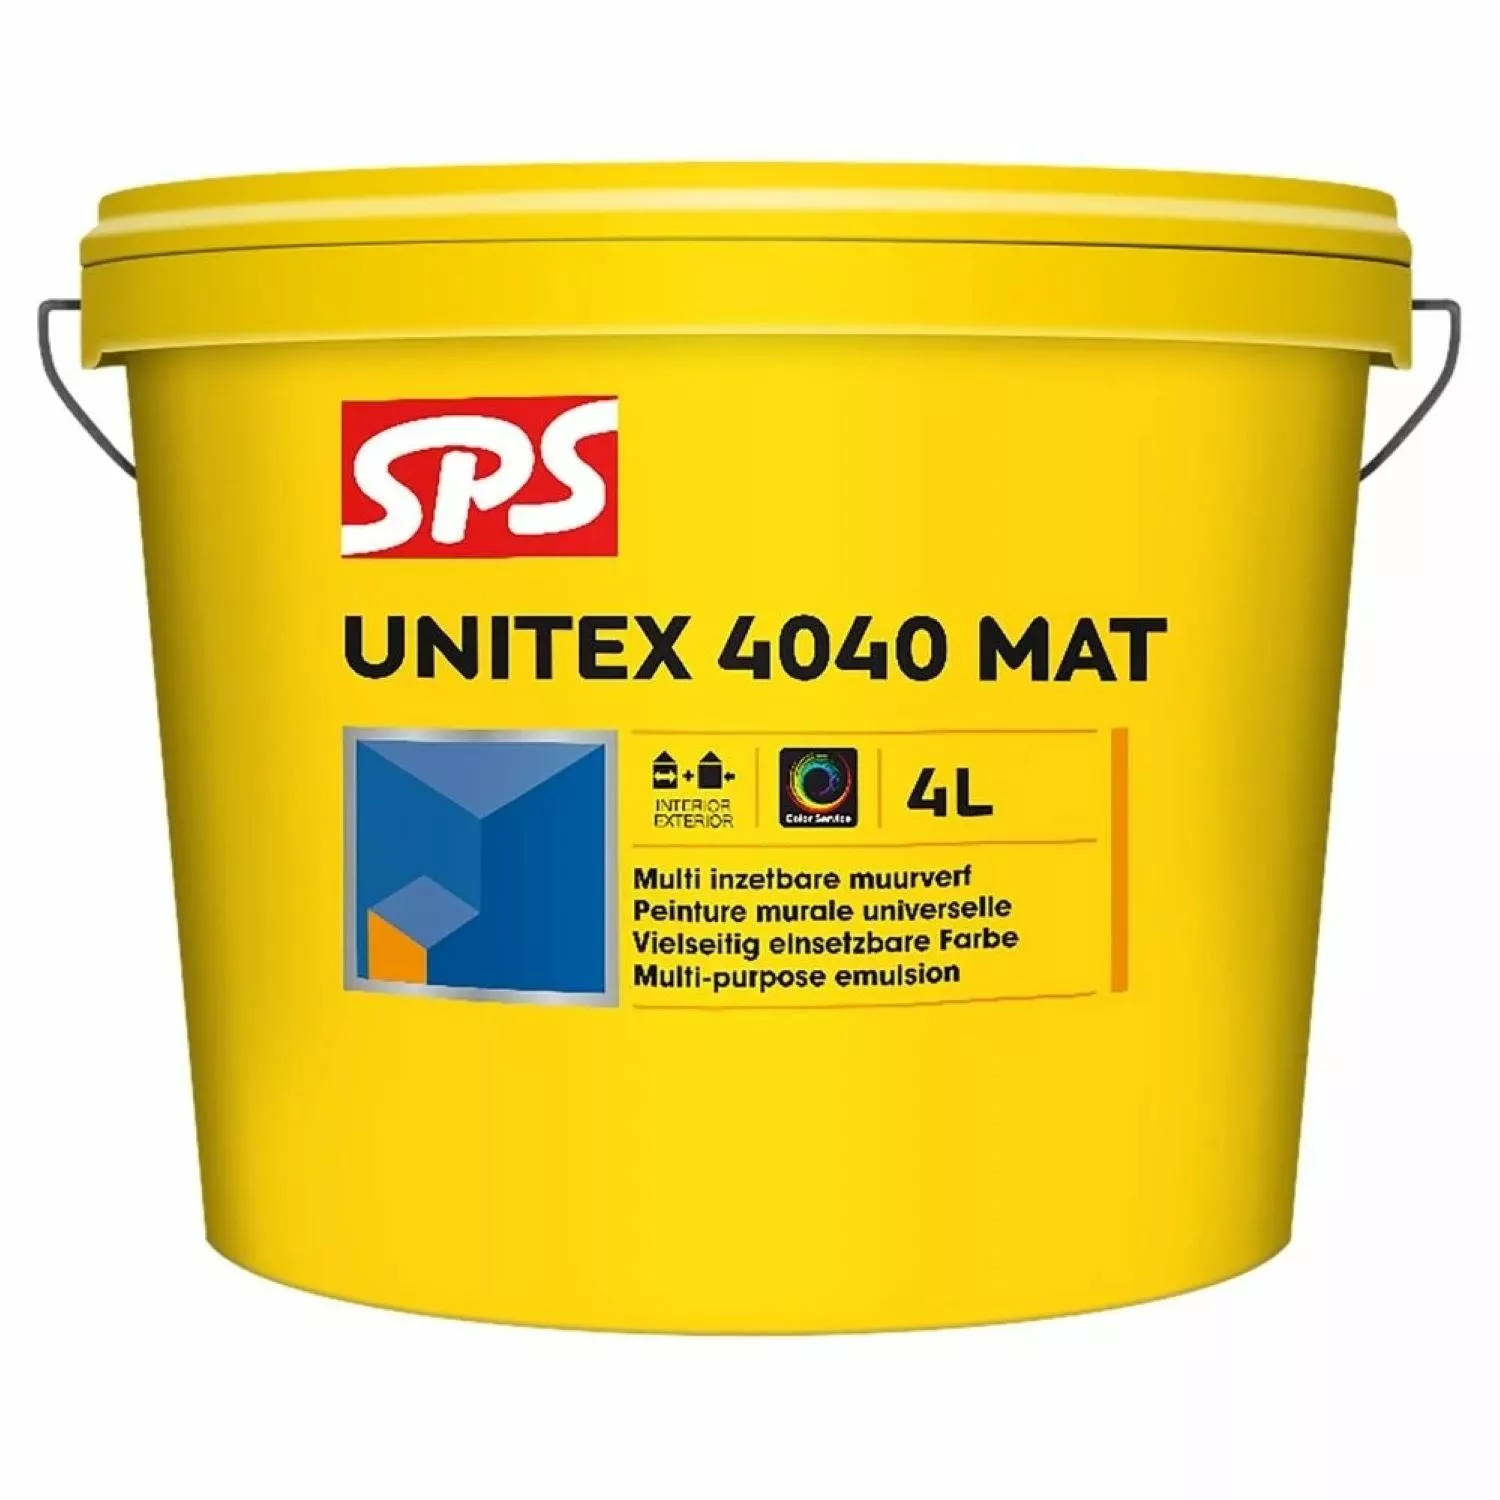 SPS Unitex 4040 Mat Muurverf - RAL 9010 zuiverwit - 4L